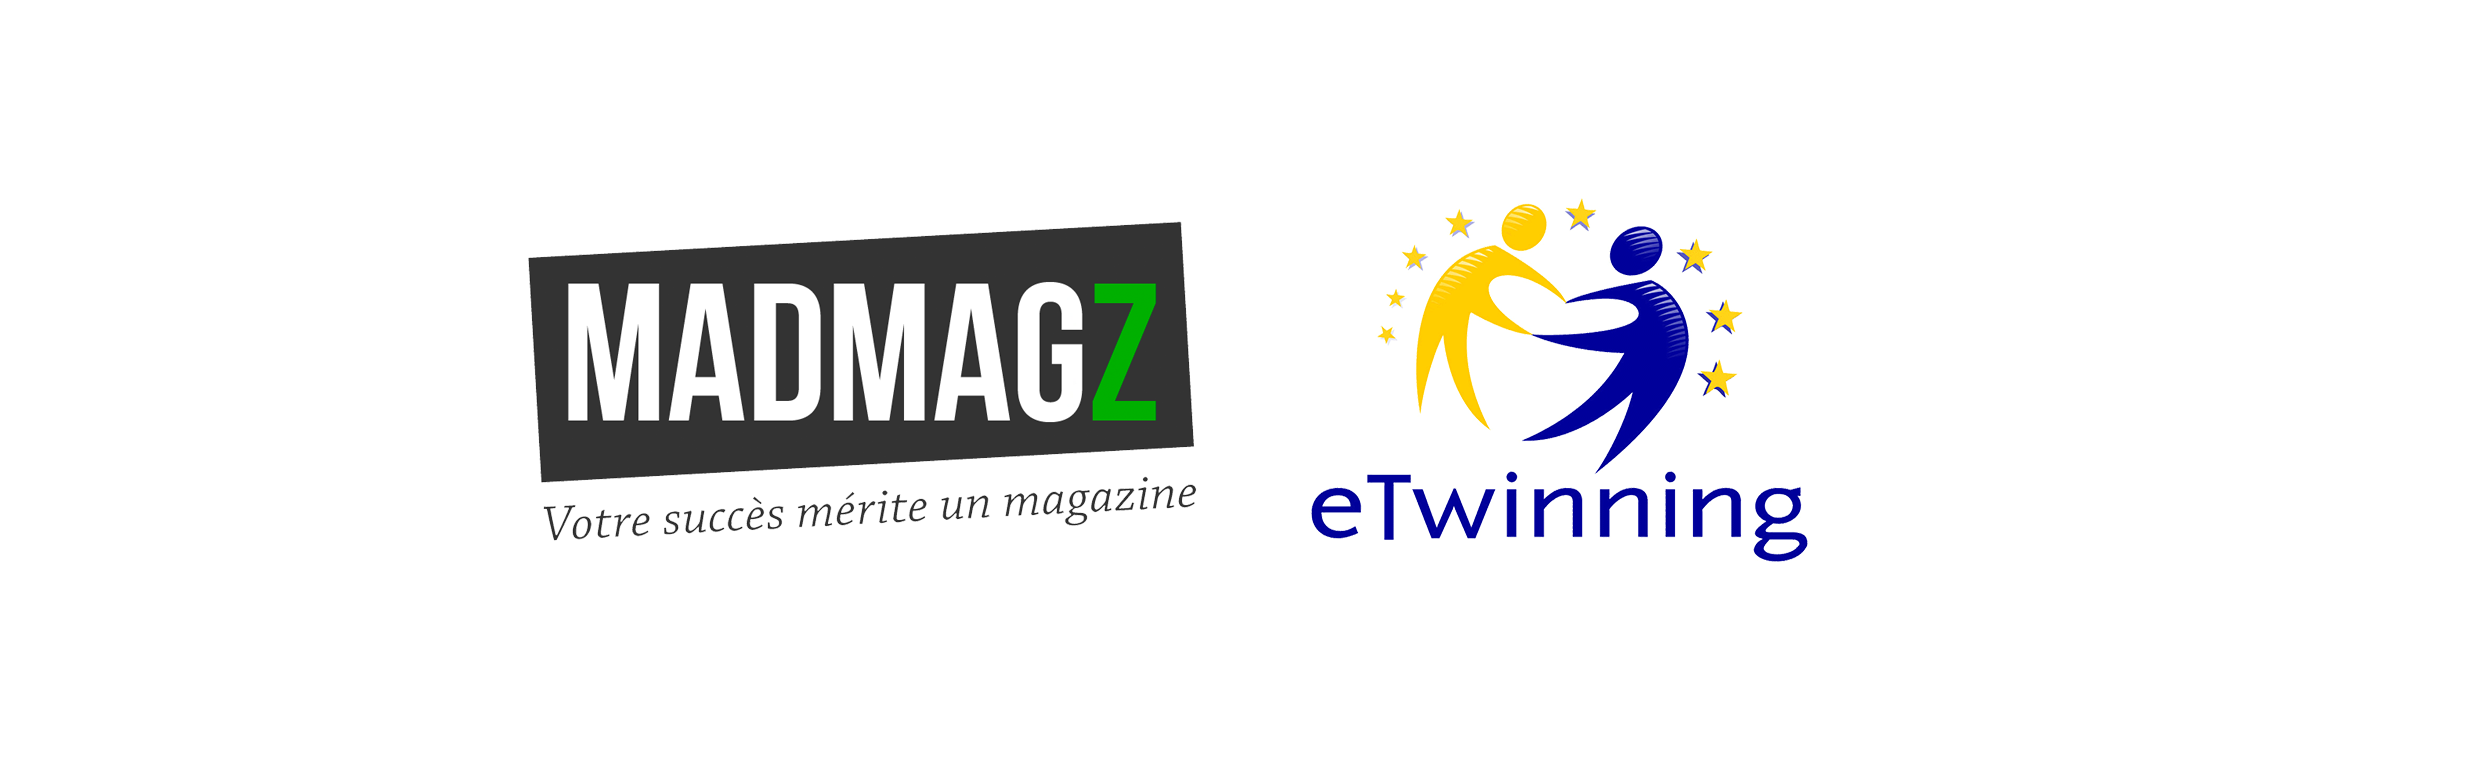 Partenariat entre eTwinning et Madmagz pour renforcer la collaboration entre les établissements européens